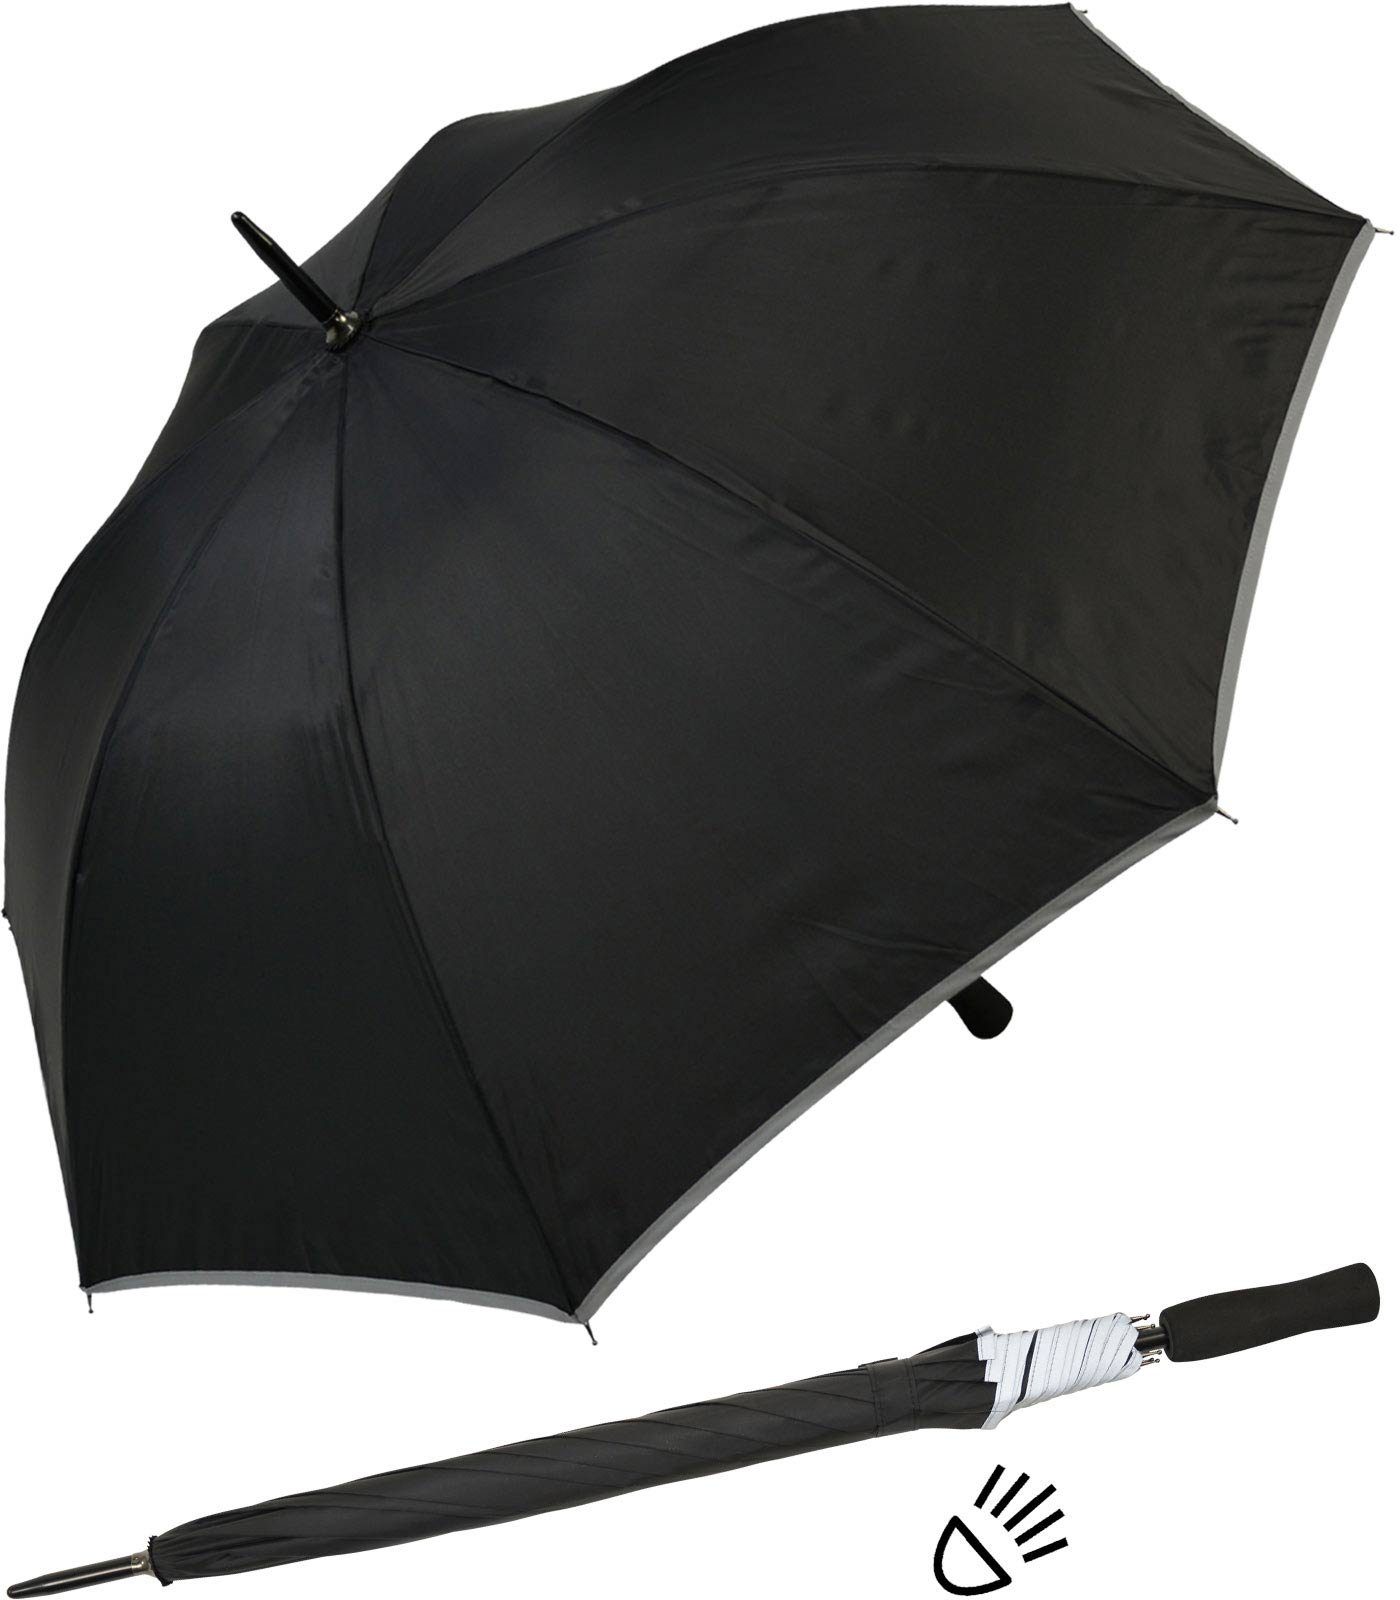 Impliva Stockregenschirm Falcone® Reflex Fiberglas reflektierende Borte, leichter reflex Sicherheitsschirm schwarz